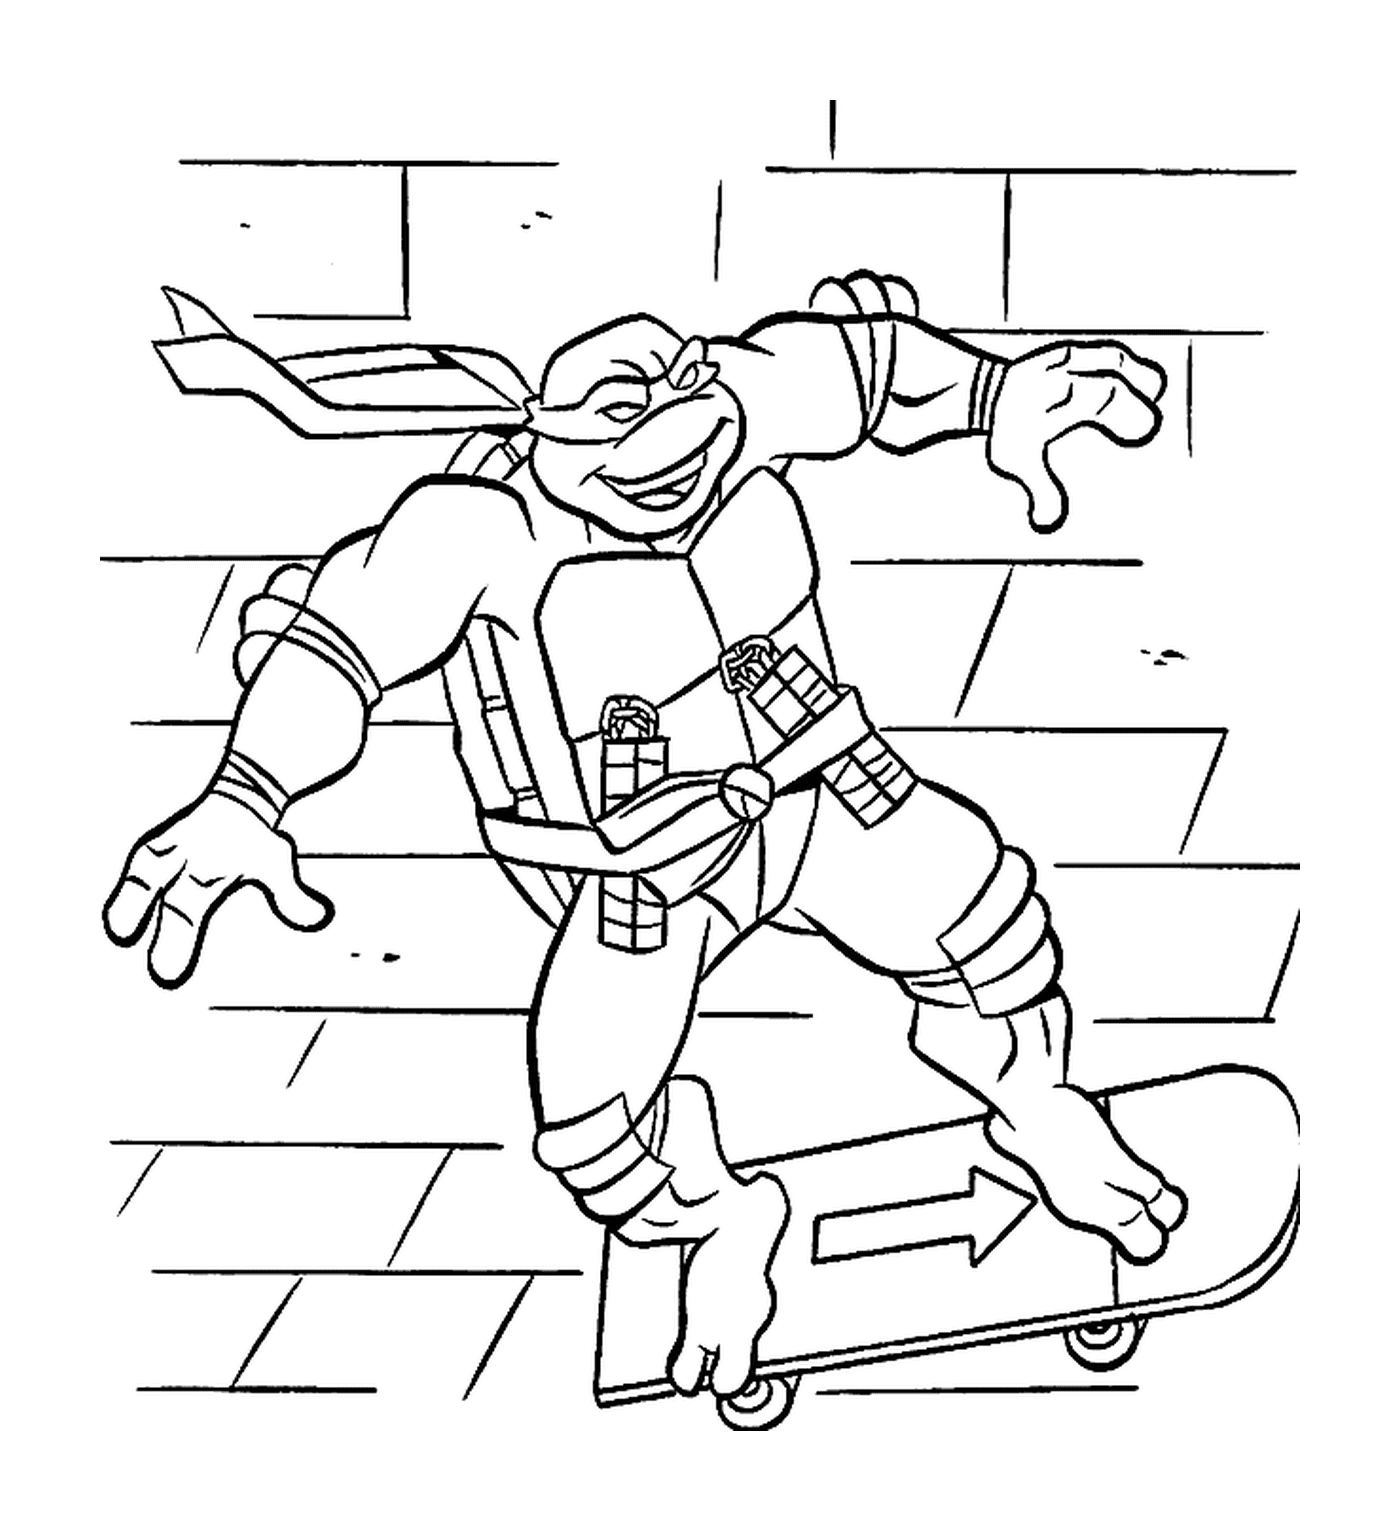  Ninja Schildkröte auf einem Skateboard 